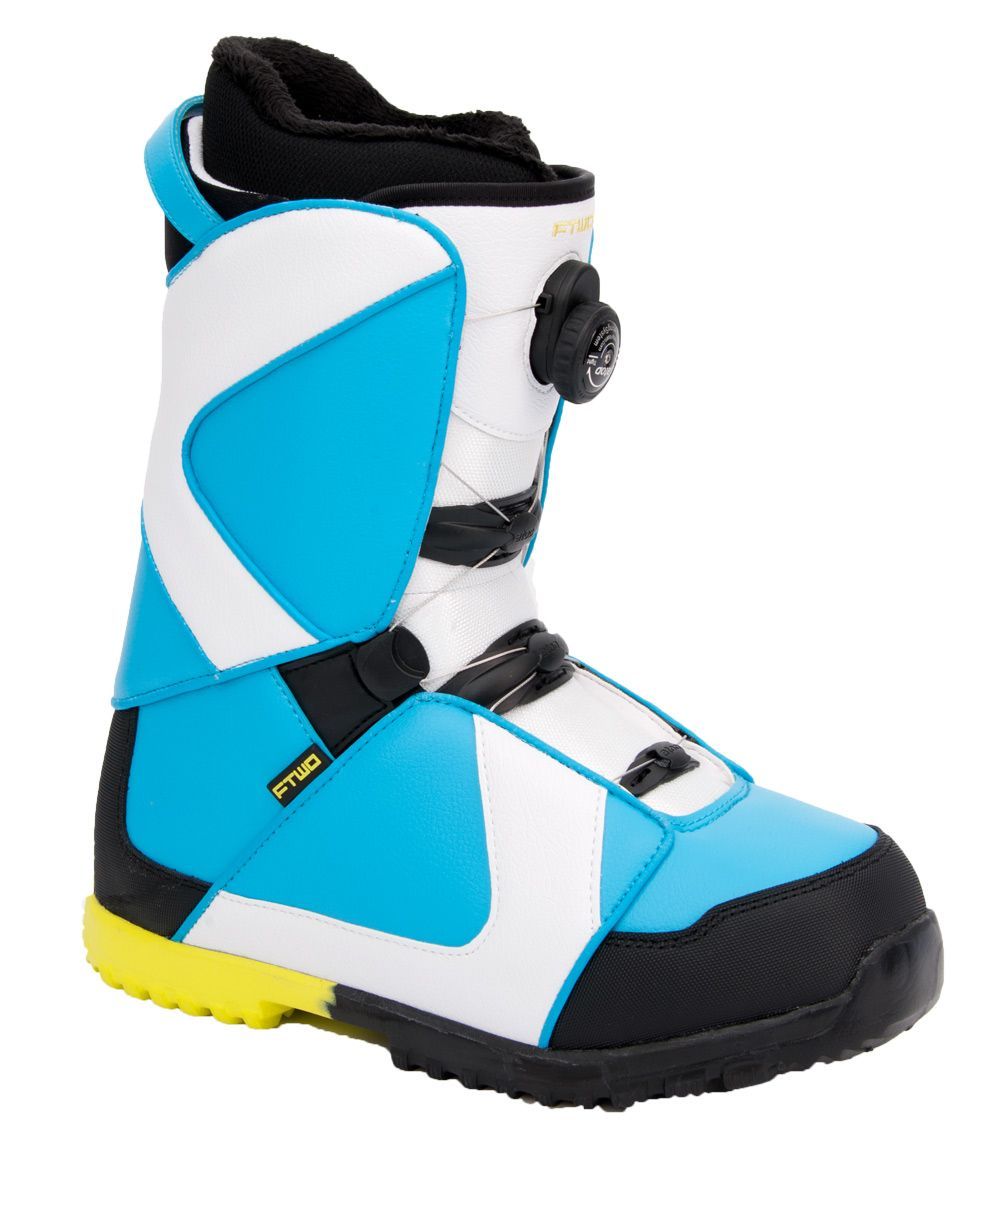 Ботинки сноубордические Ftwo Air (2013-14) фото